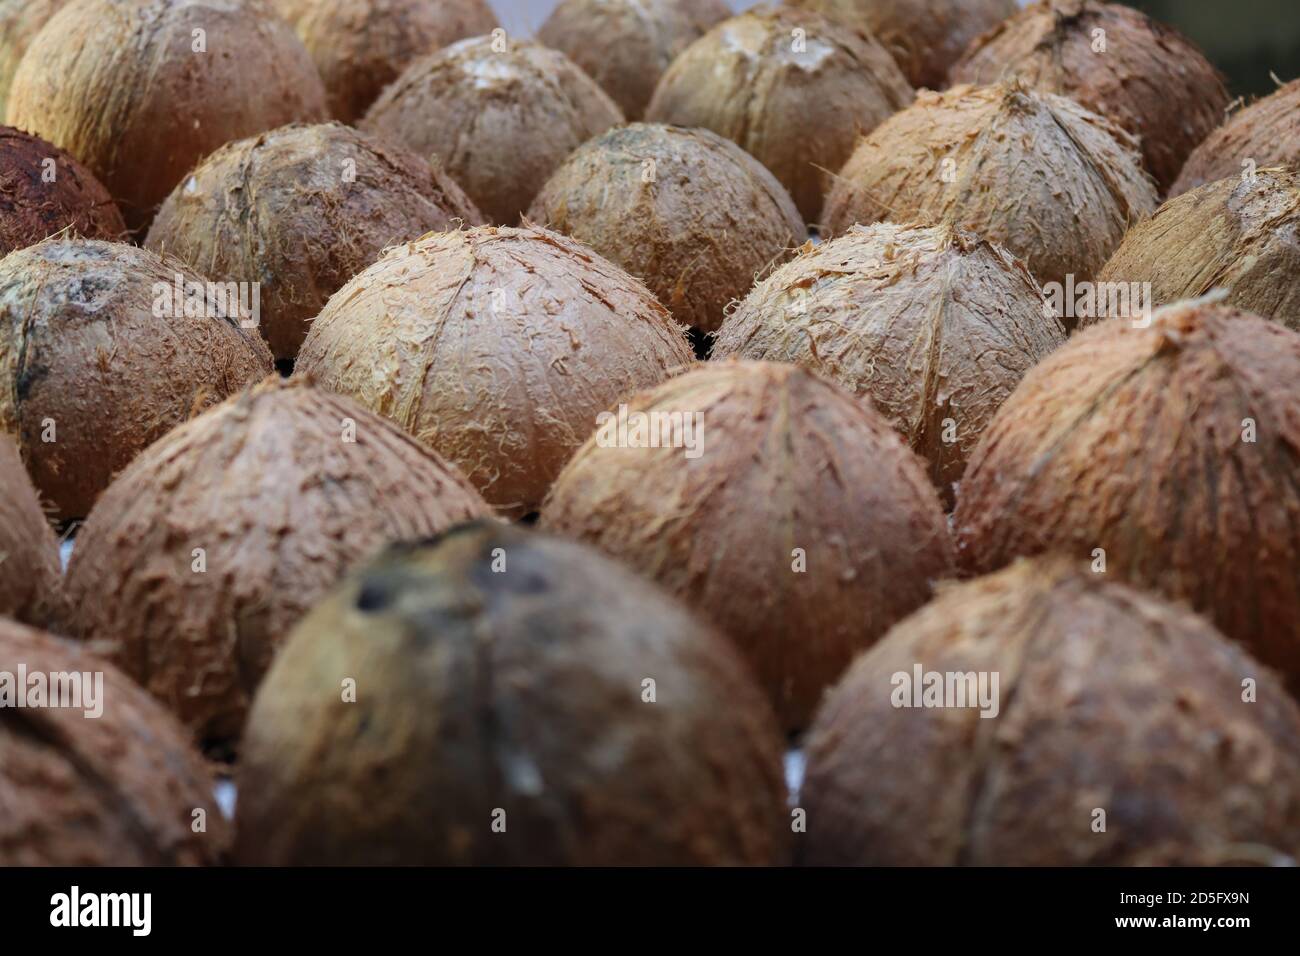 Das sind Kokosnussschalen. Nach dem Sammeln von Kokosnussspread können wir diese Muscheln sehen. Diese Schalen sind bereit für die meisten kreativen handgefertigten Artikel. Stockfoto